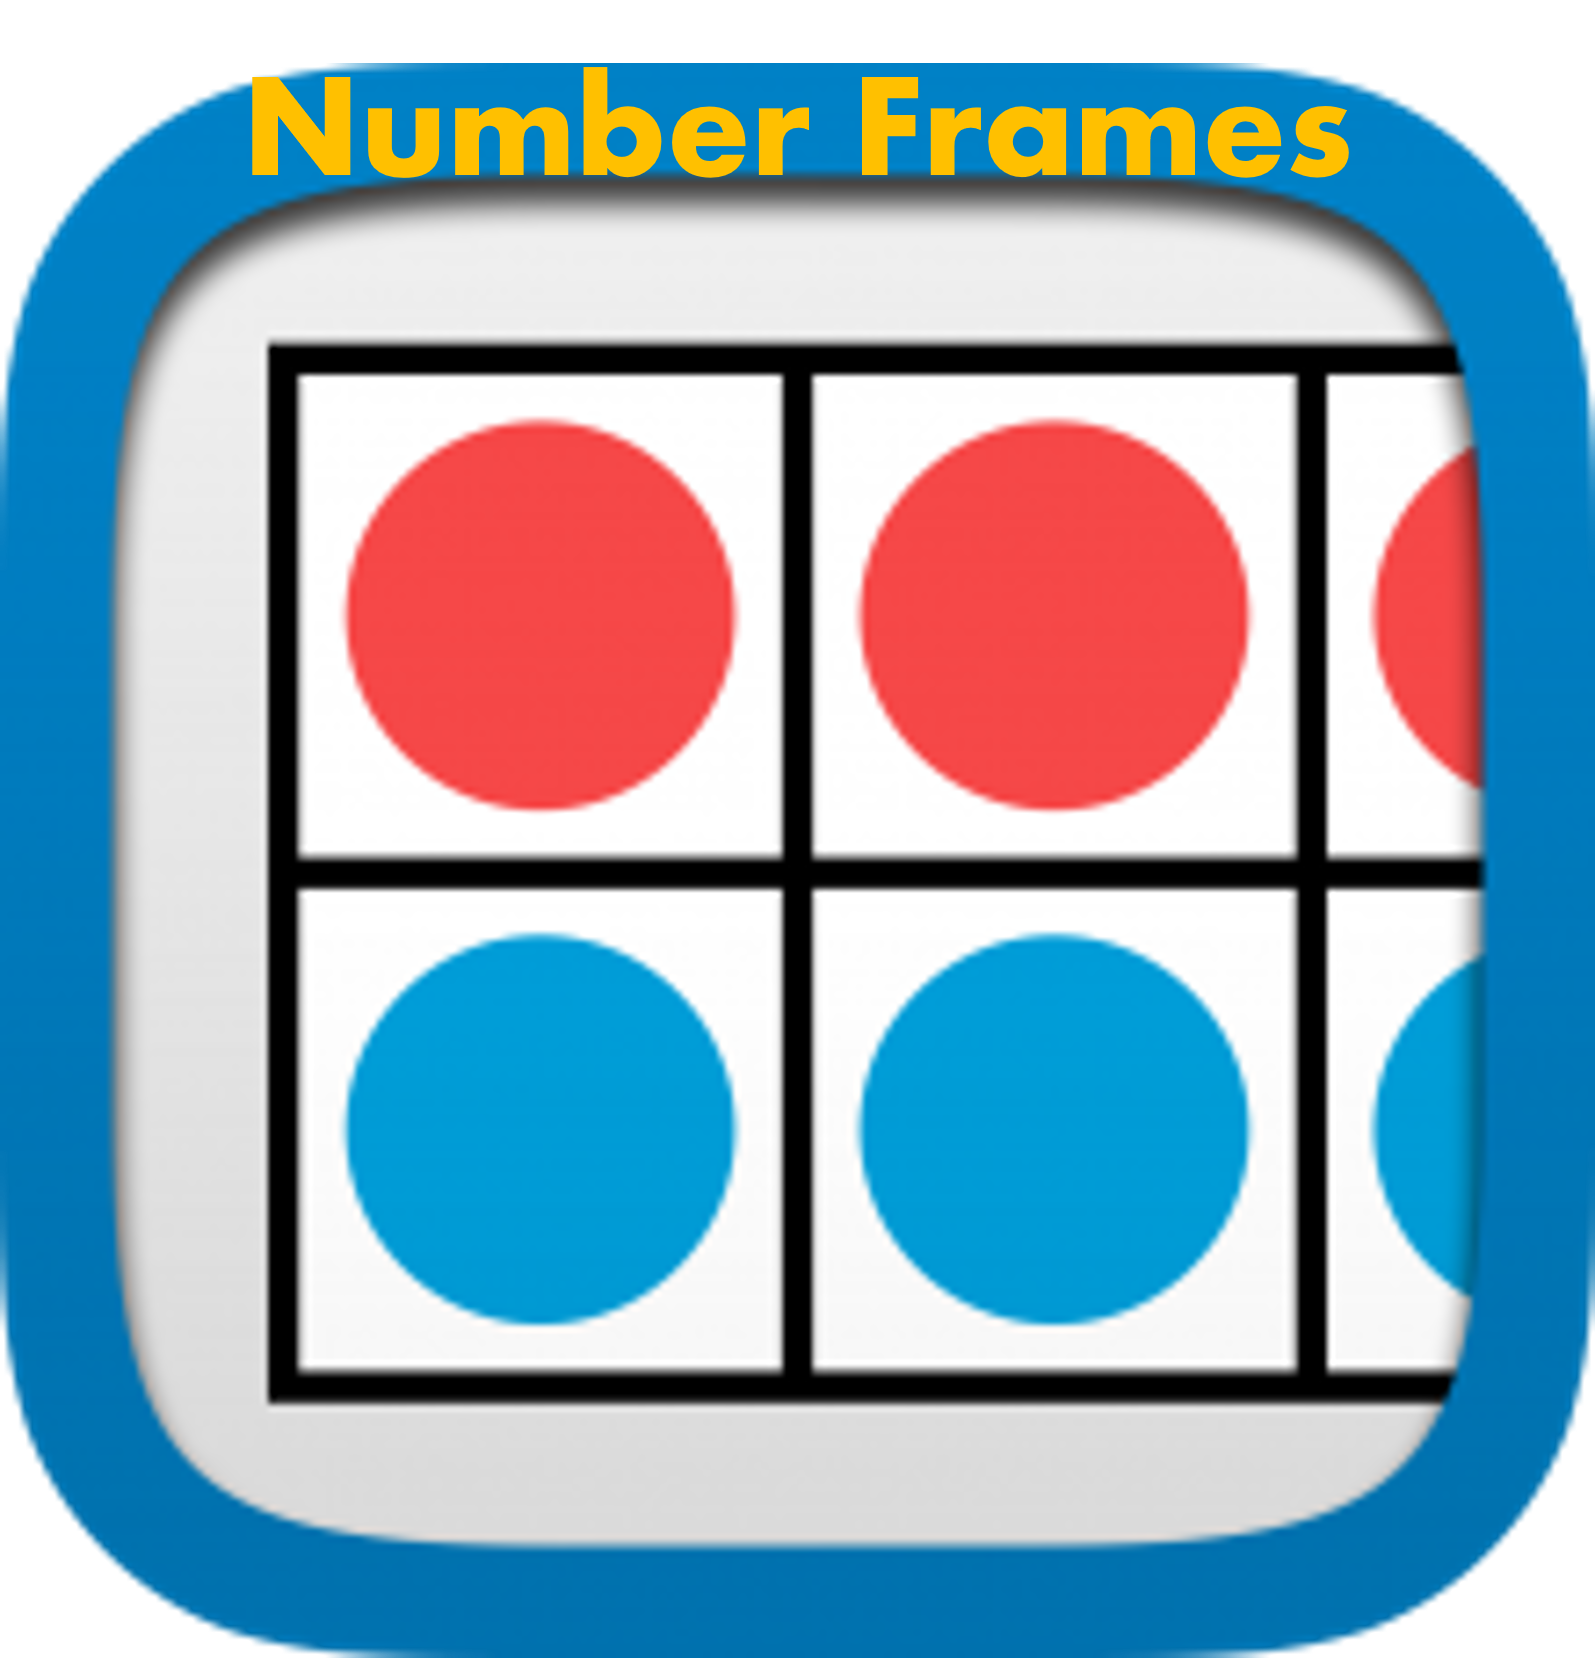 Number Frames